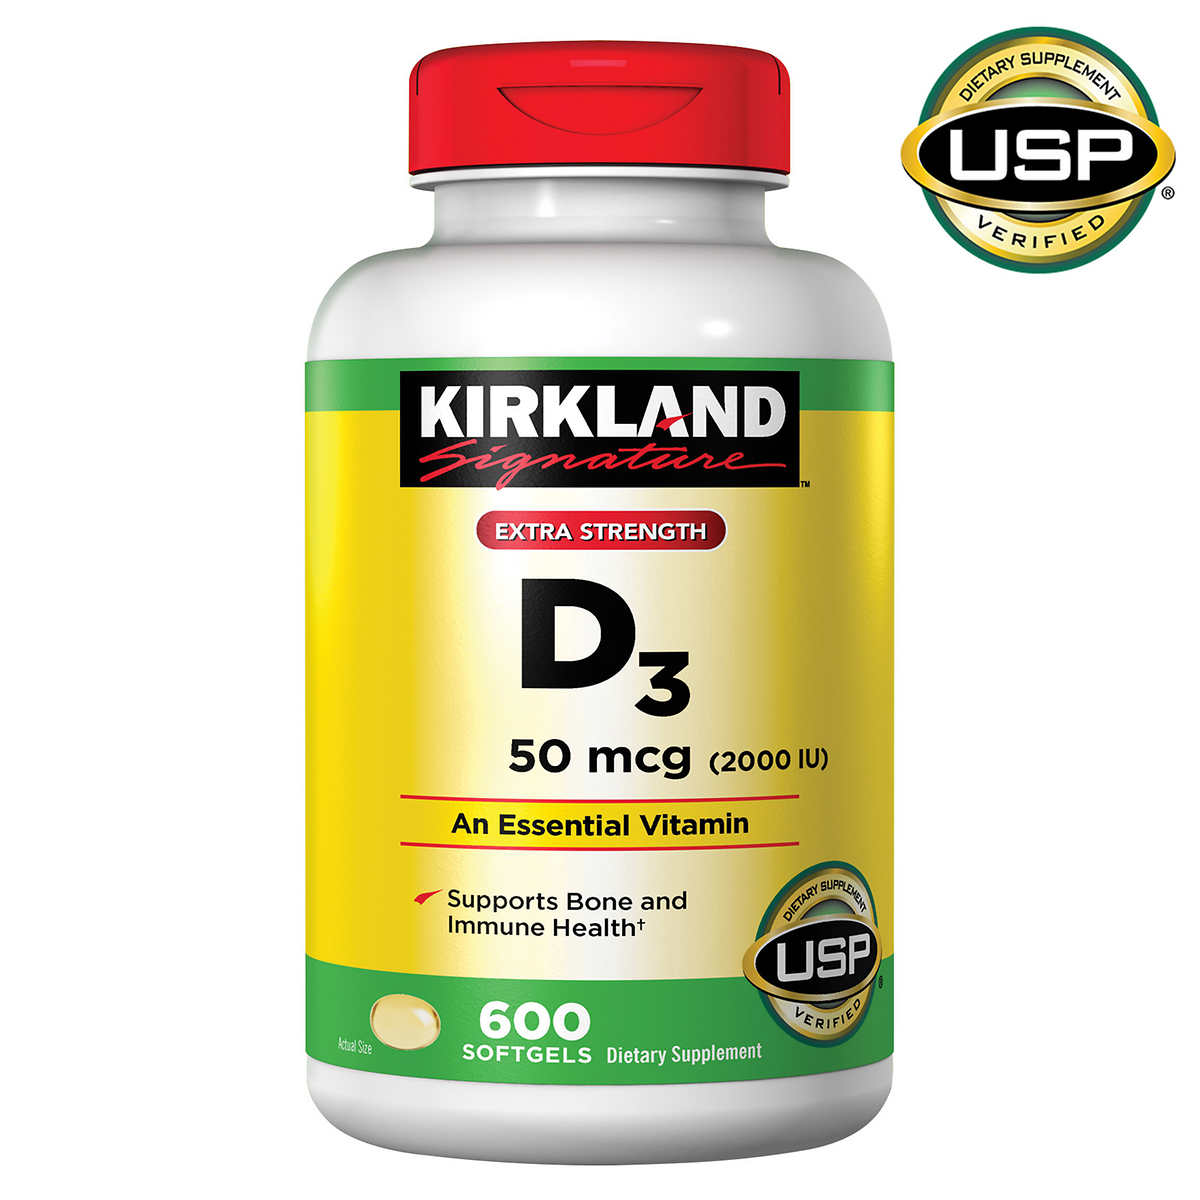 Kirkland Signature Vitamin E 180mg 500 Softgels